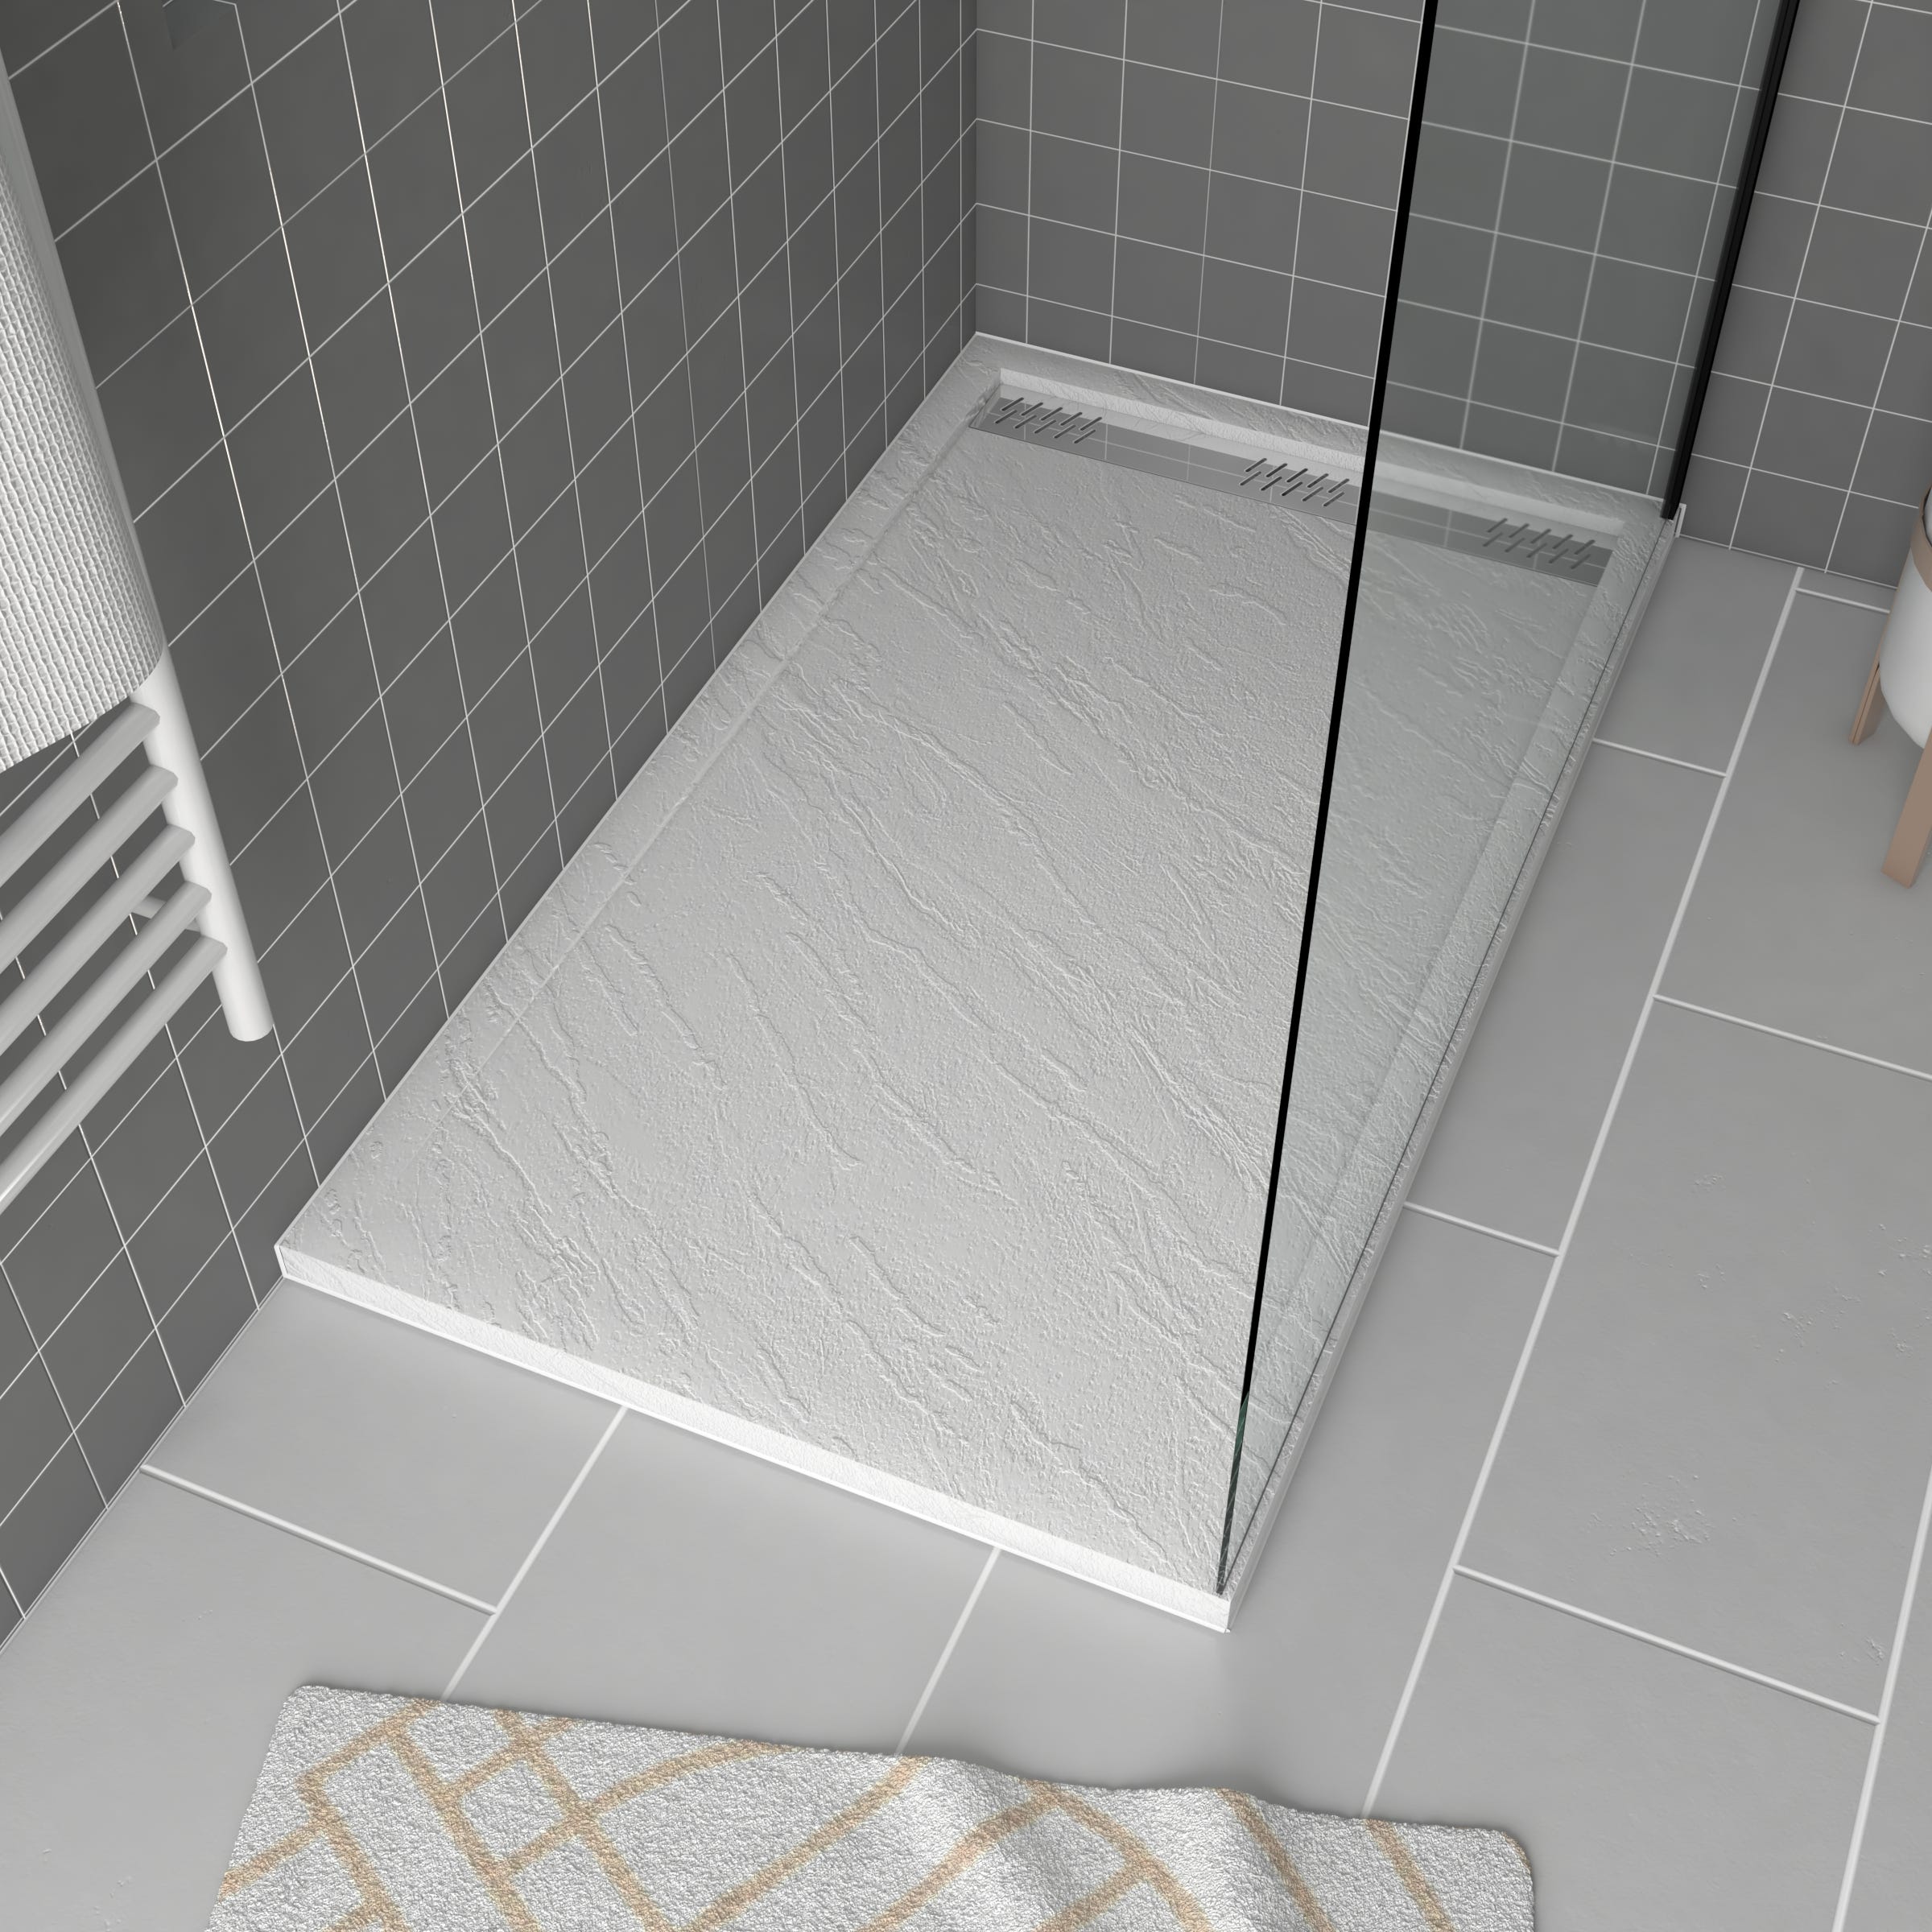 Plato de ducha a nivel de suelo con desagüe lineal en el centro 